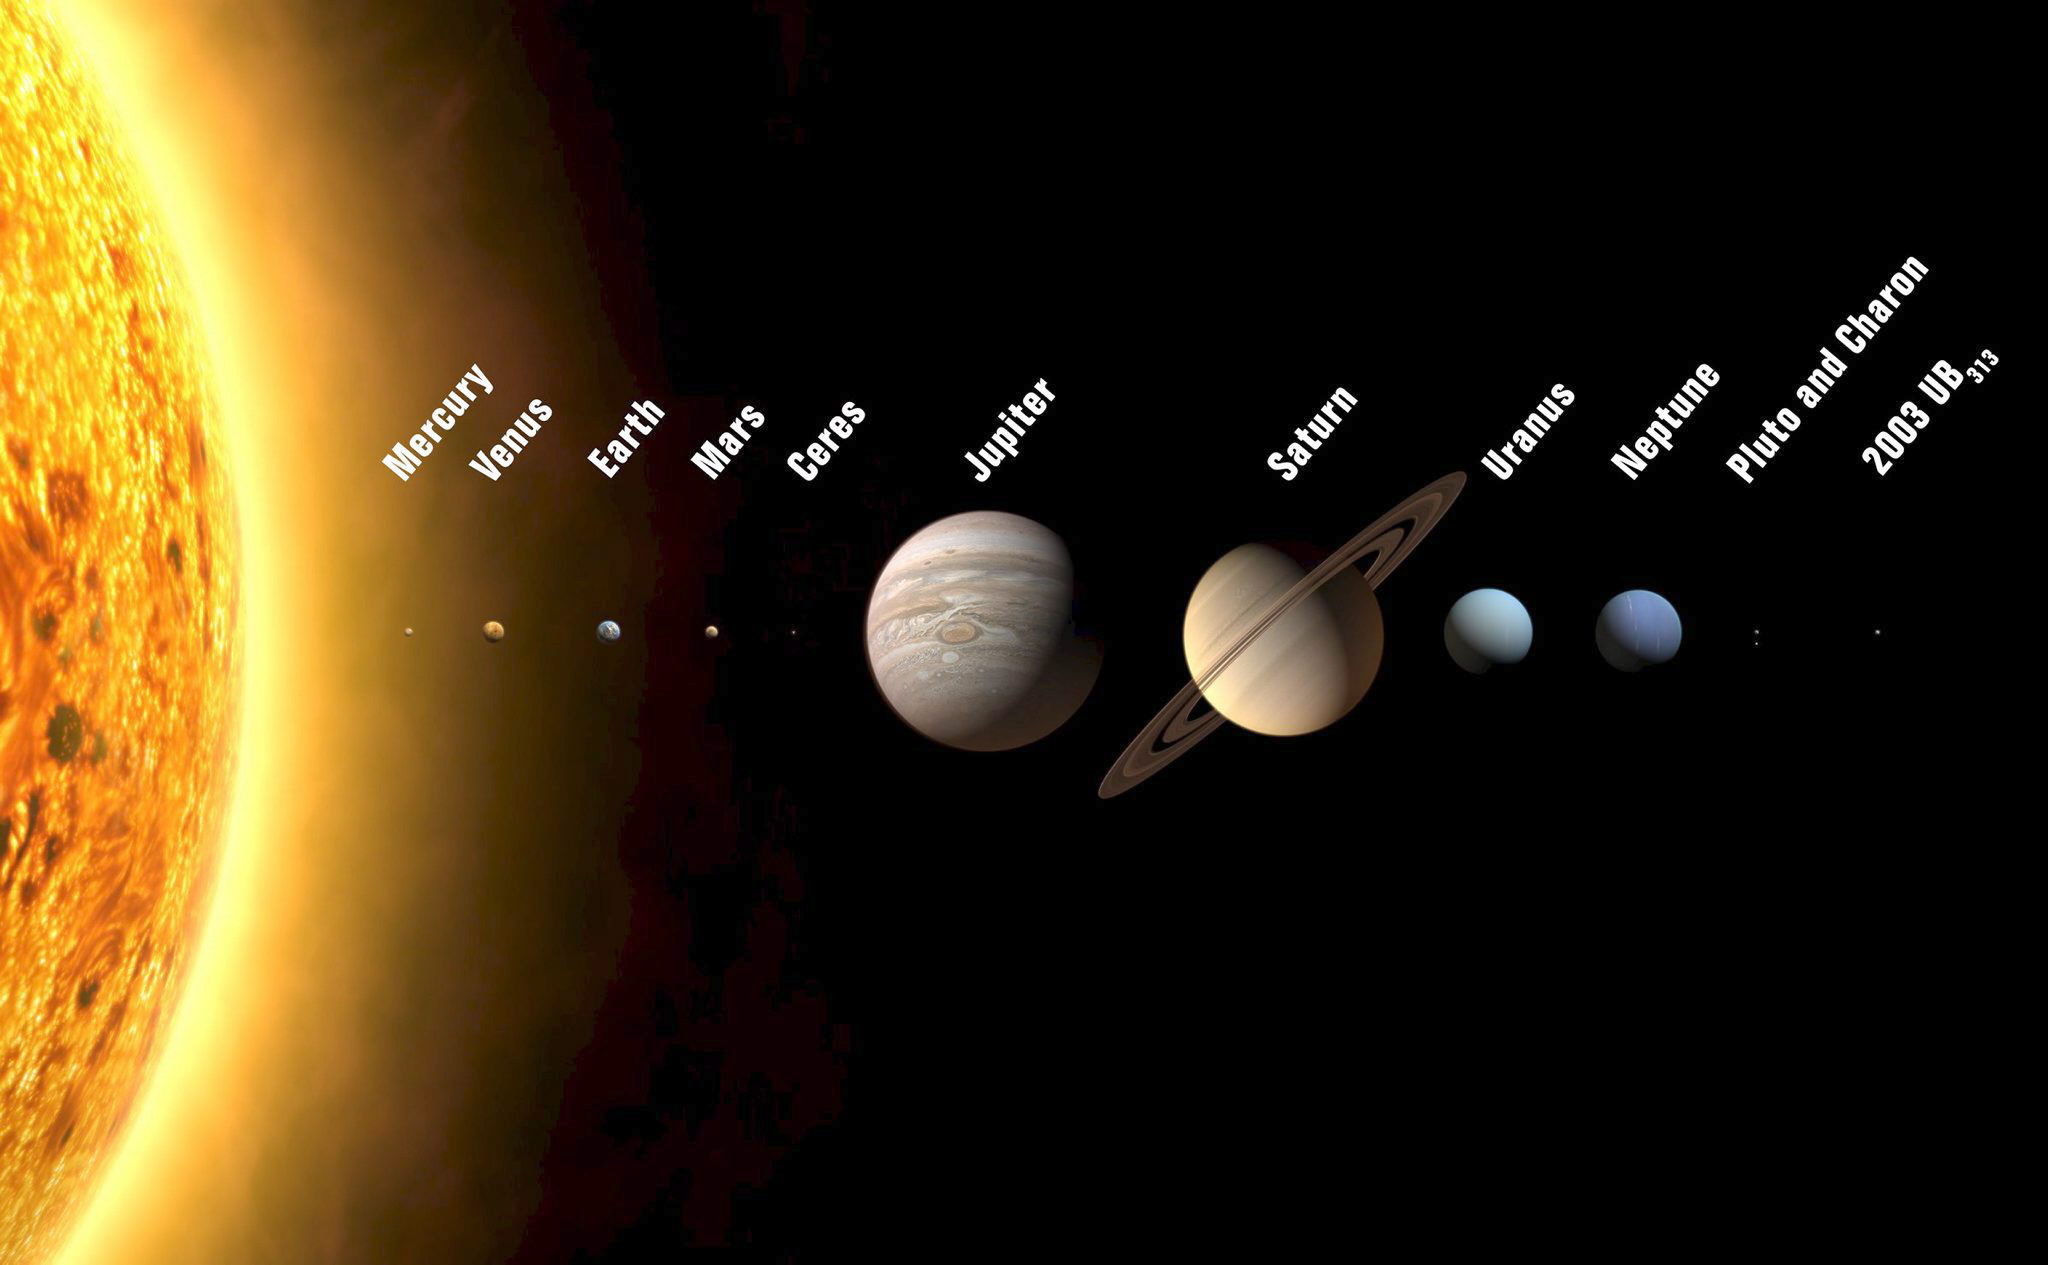 Cuando ocurren las conjunciones los planetas aparecen muy juntos, con pocos grados de separación, explicaron desde el portal Space.